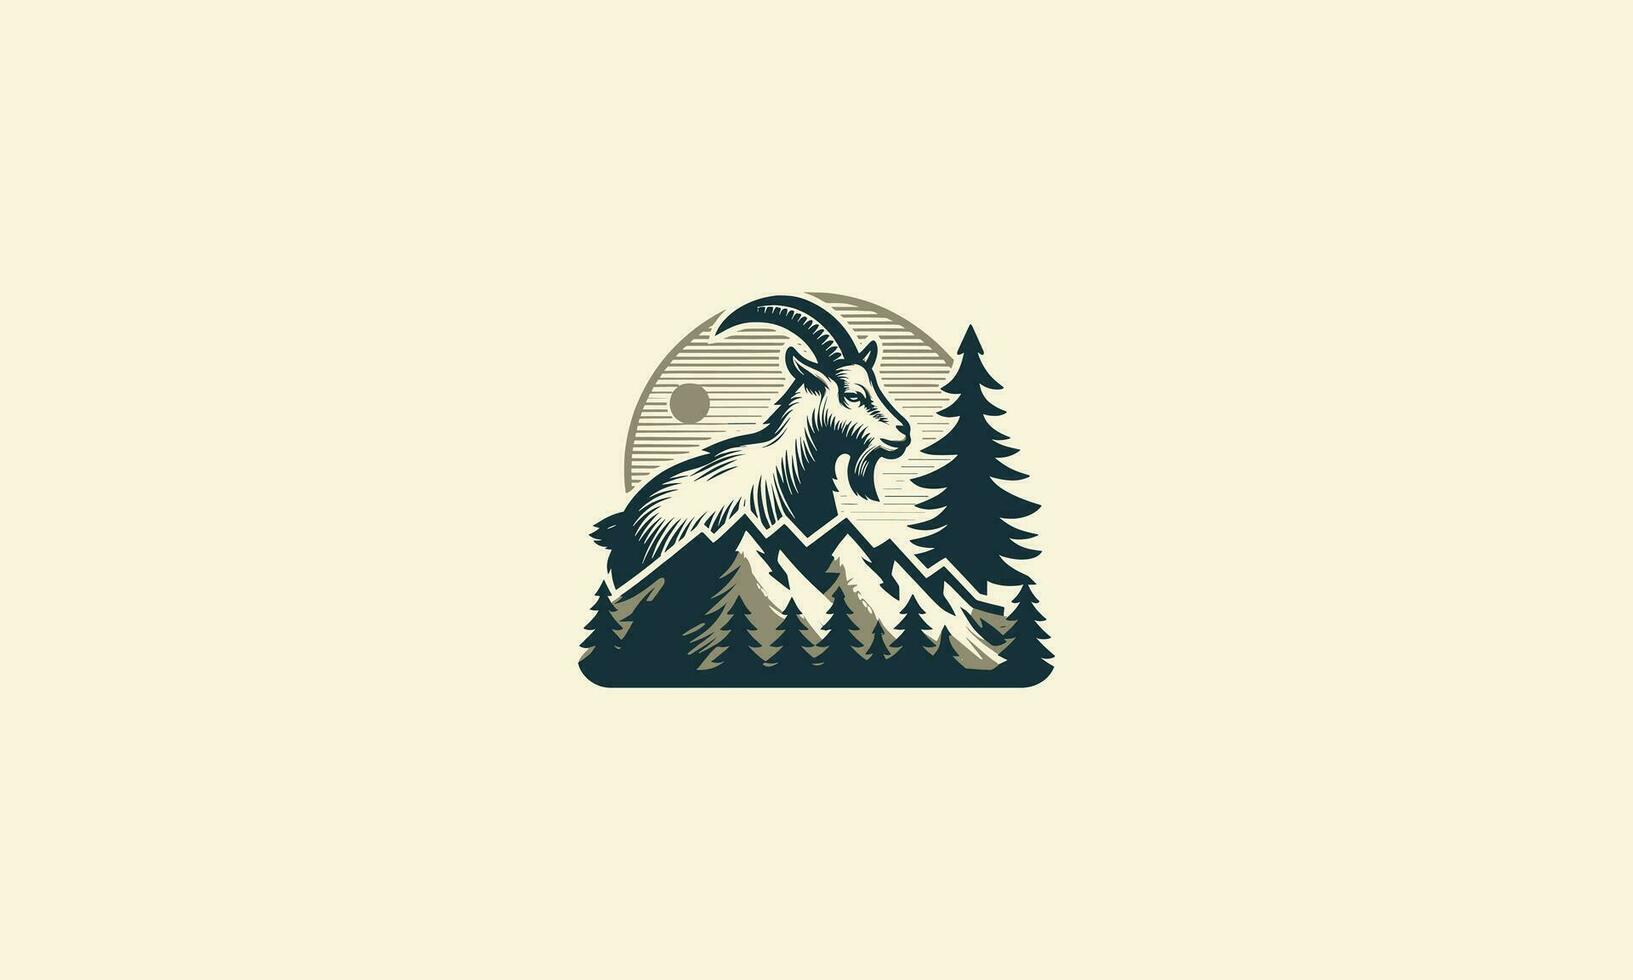 goat on mountain vector illustration logo design